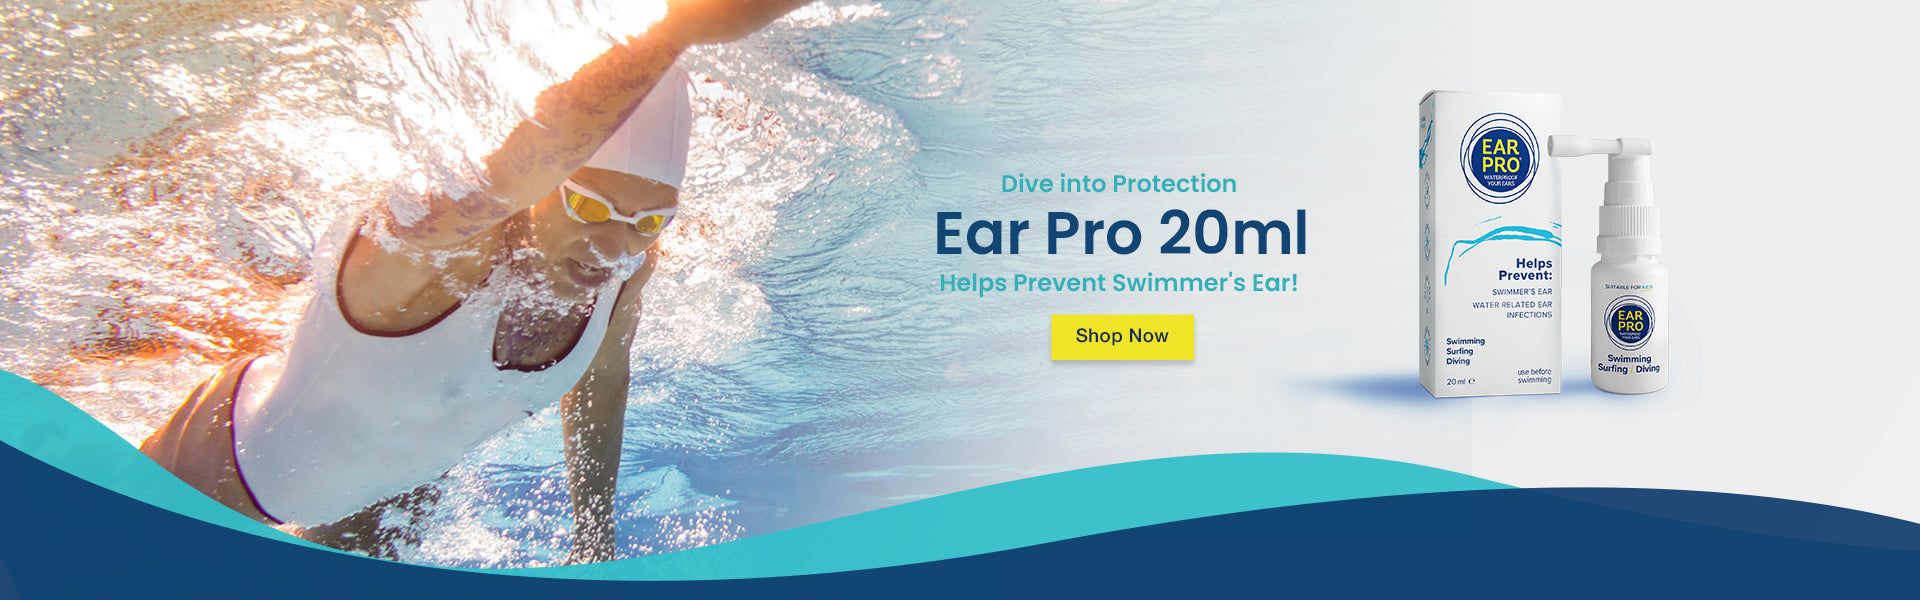 Ear pro 20ml